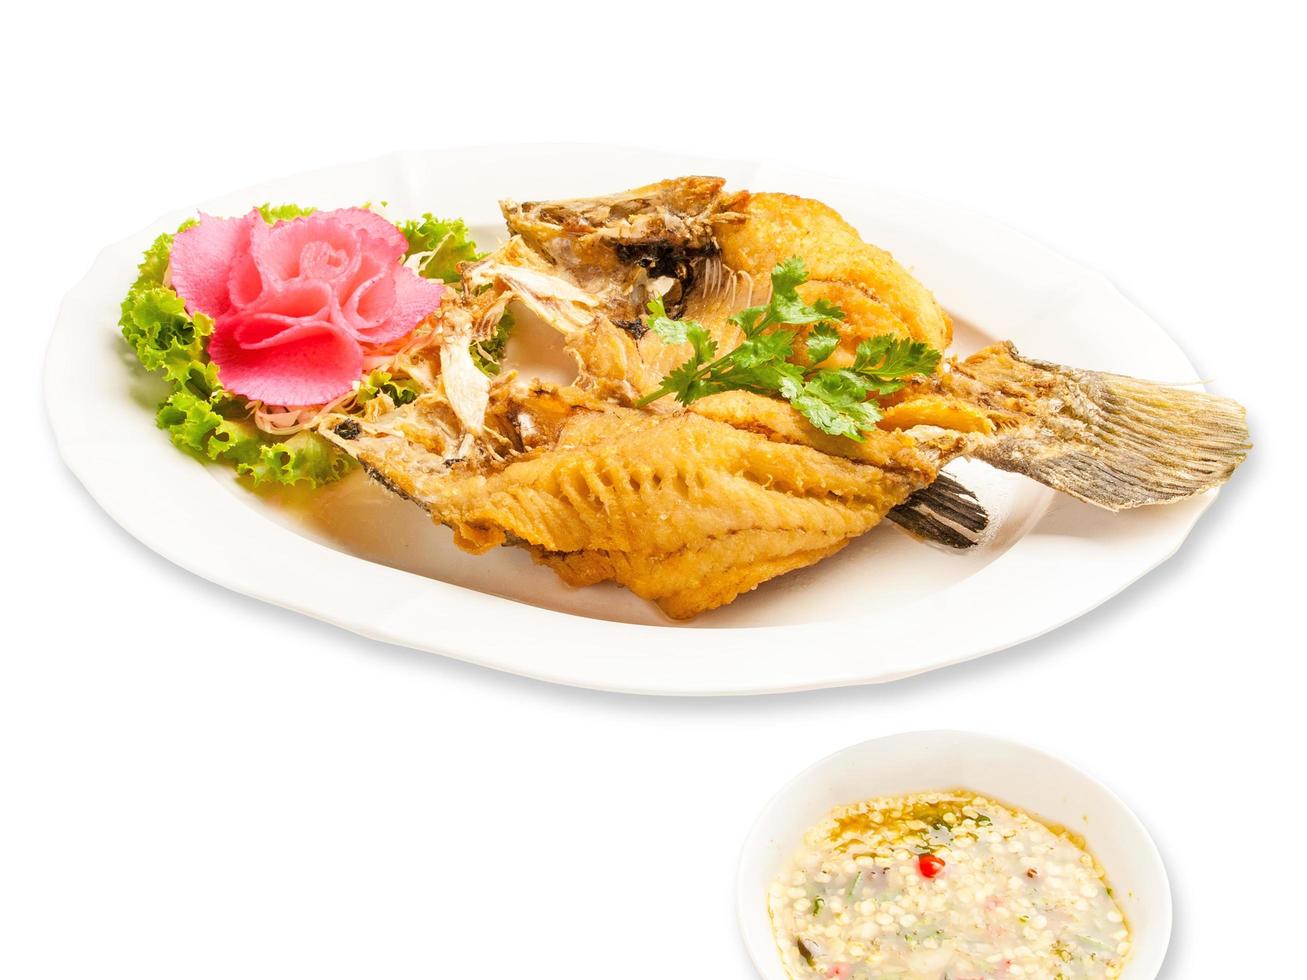 poisson frit avec sauce de poisson, cuisine thaïlandaise photo